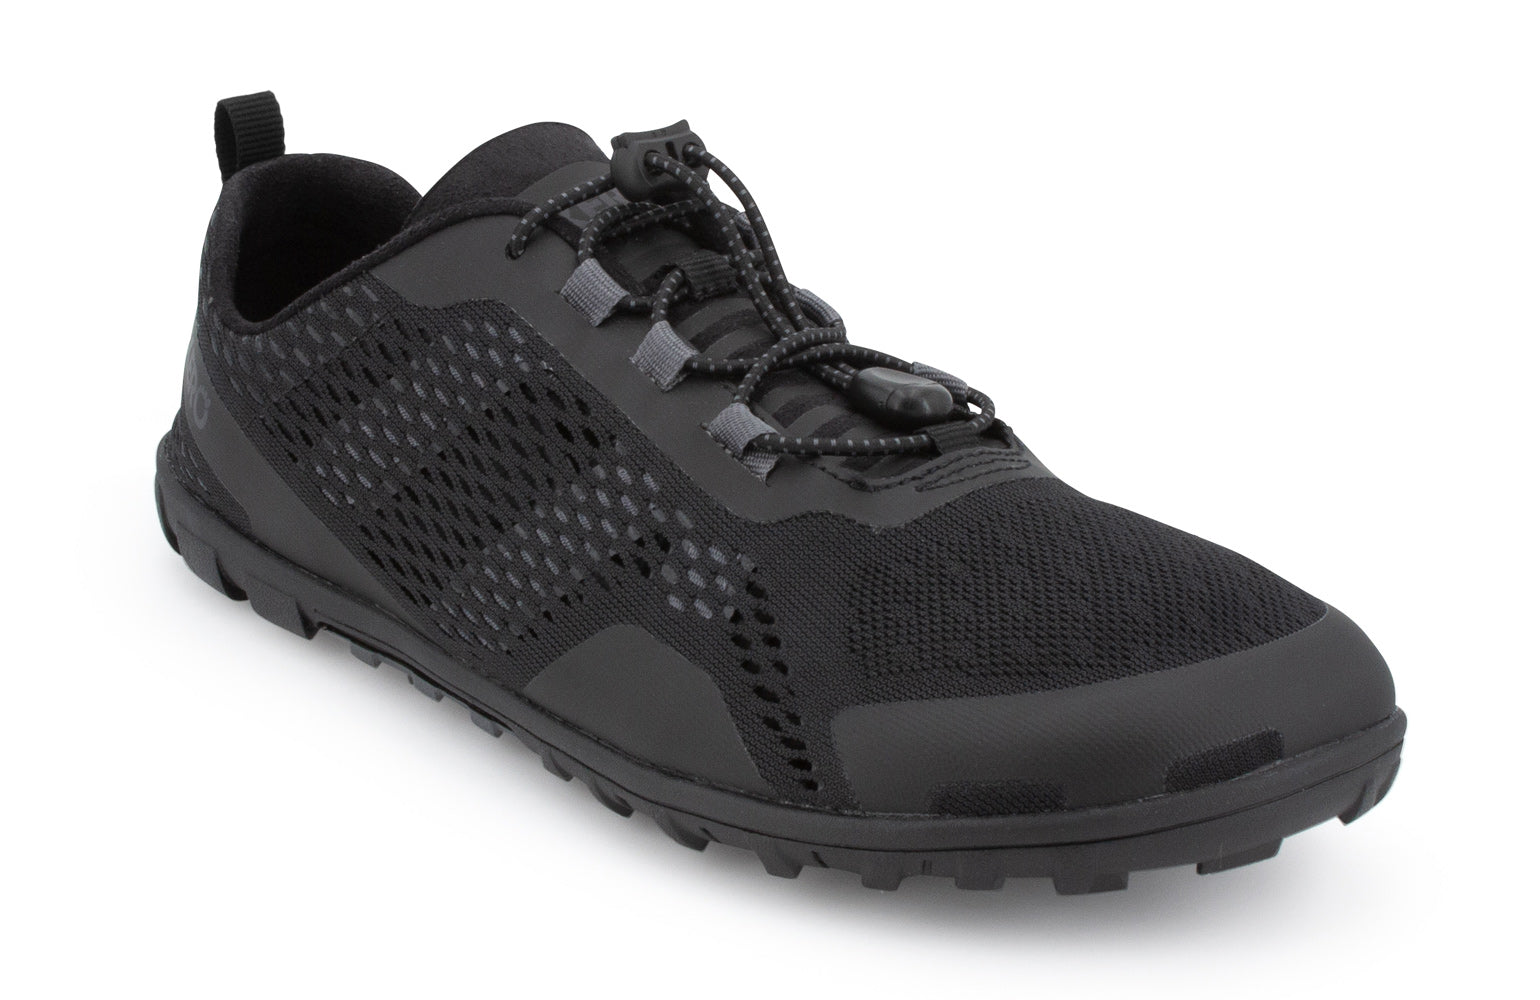 Xero Shoes Aqua X Sport barfods vand træningssko til mænd i farven black, vinklet